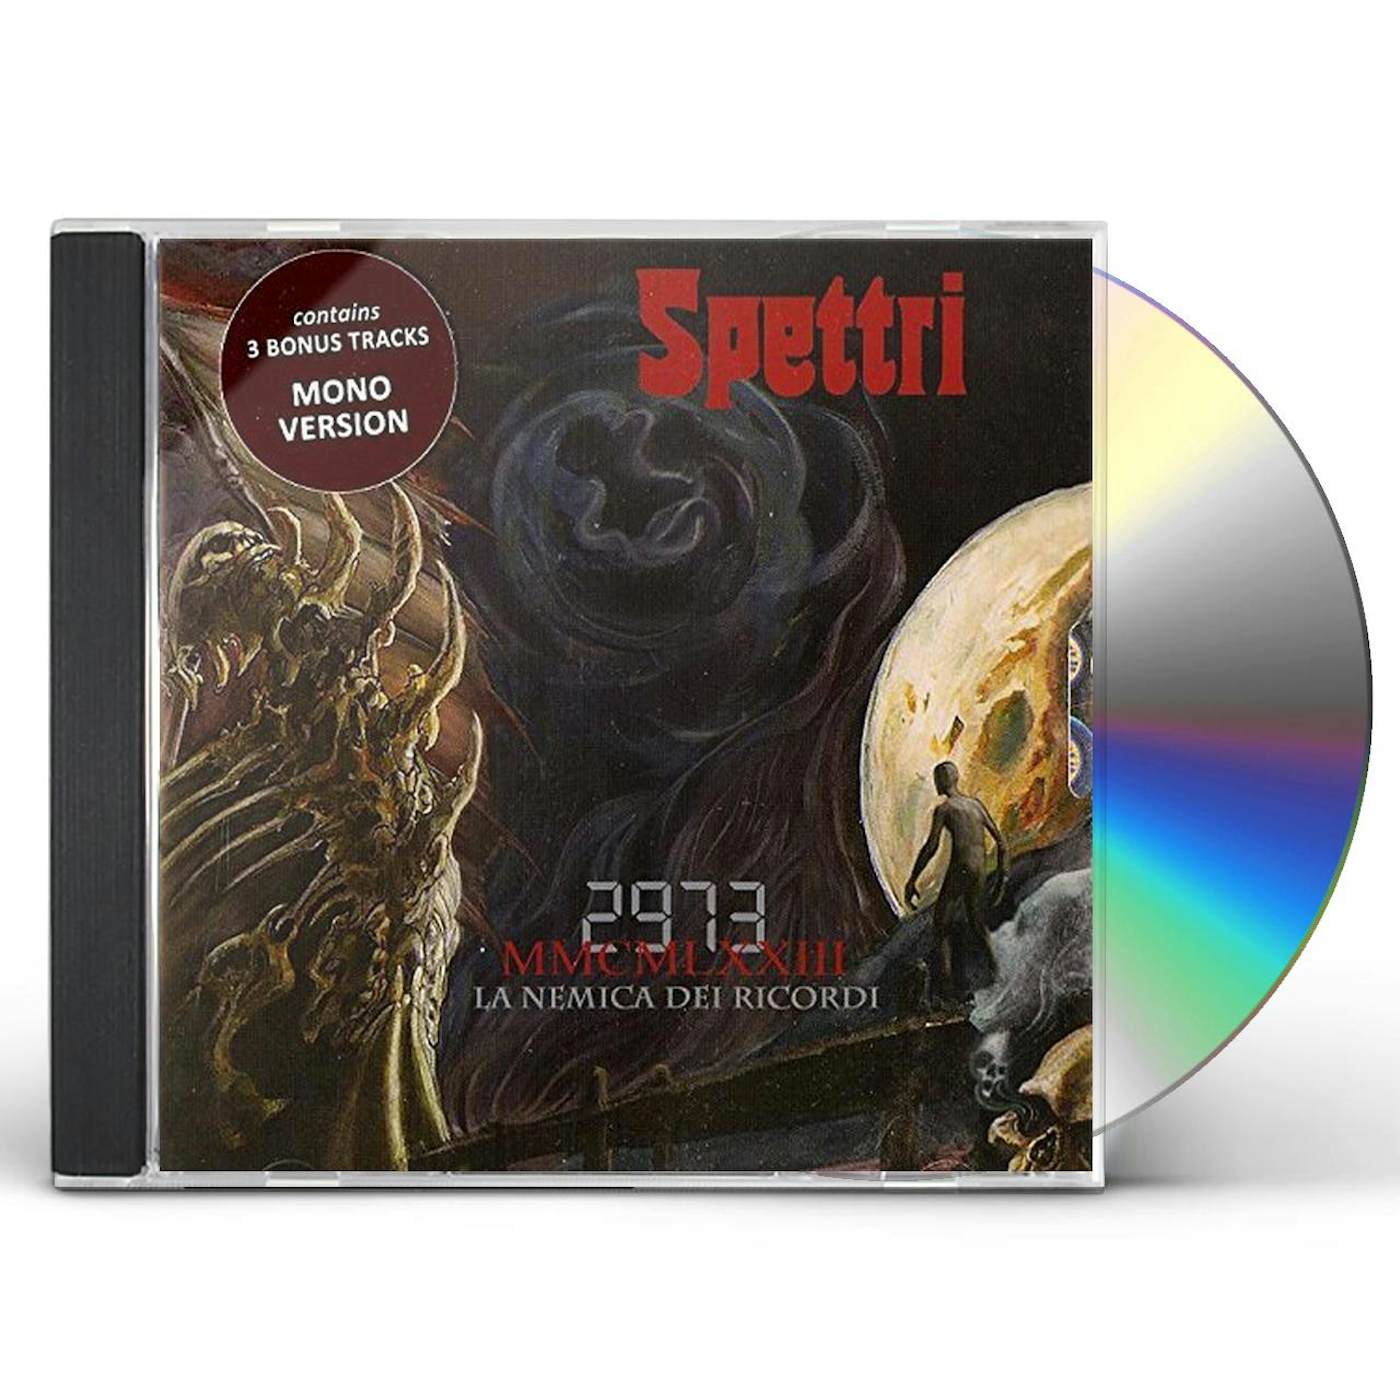 Spettri 2973 LA NEMICA DEI CD